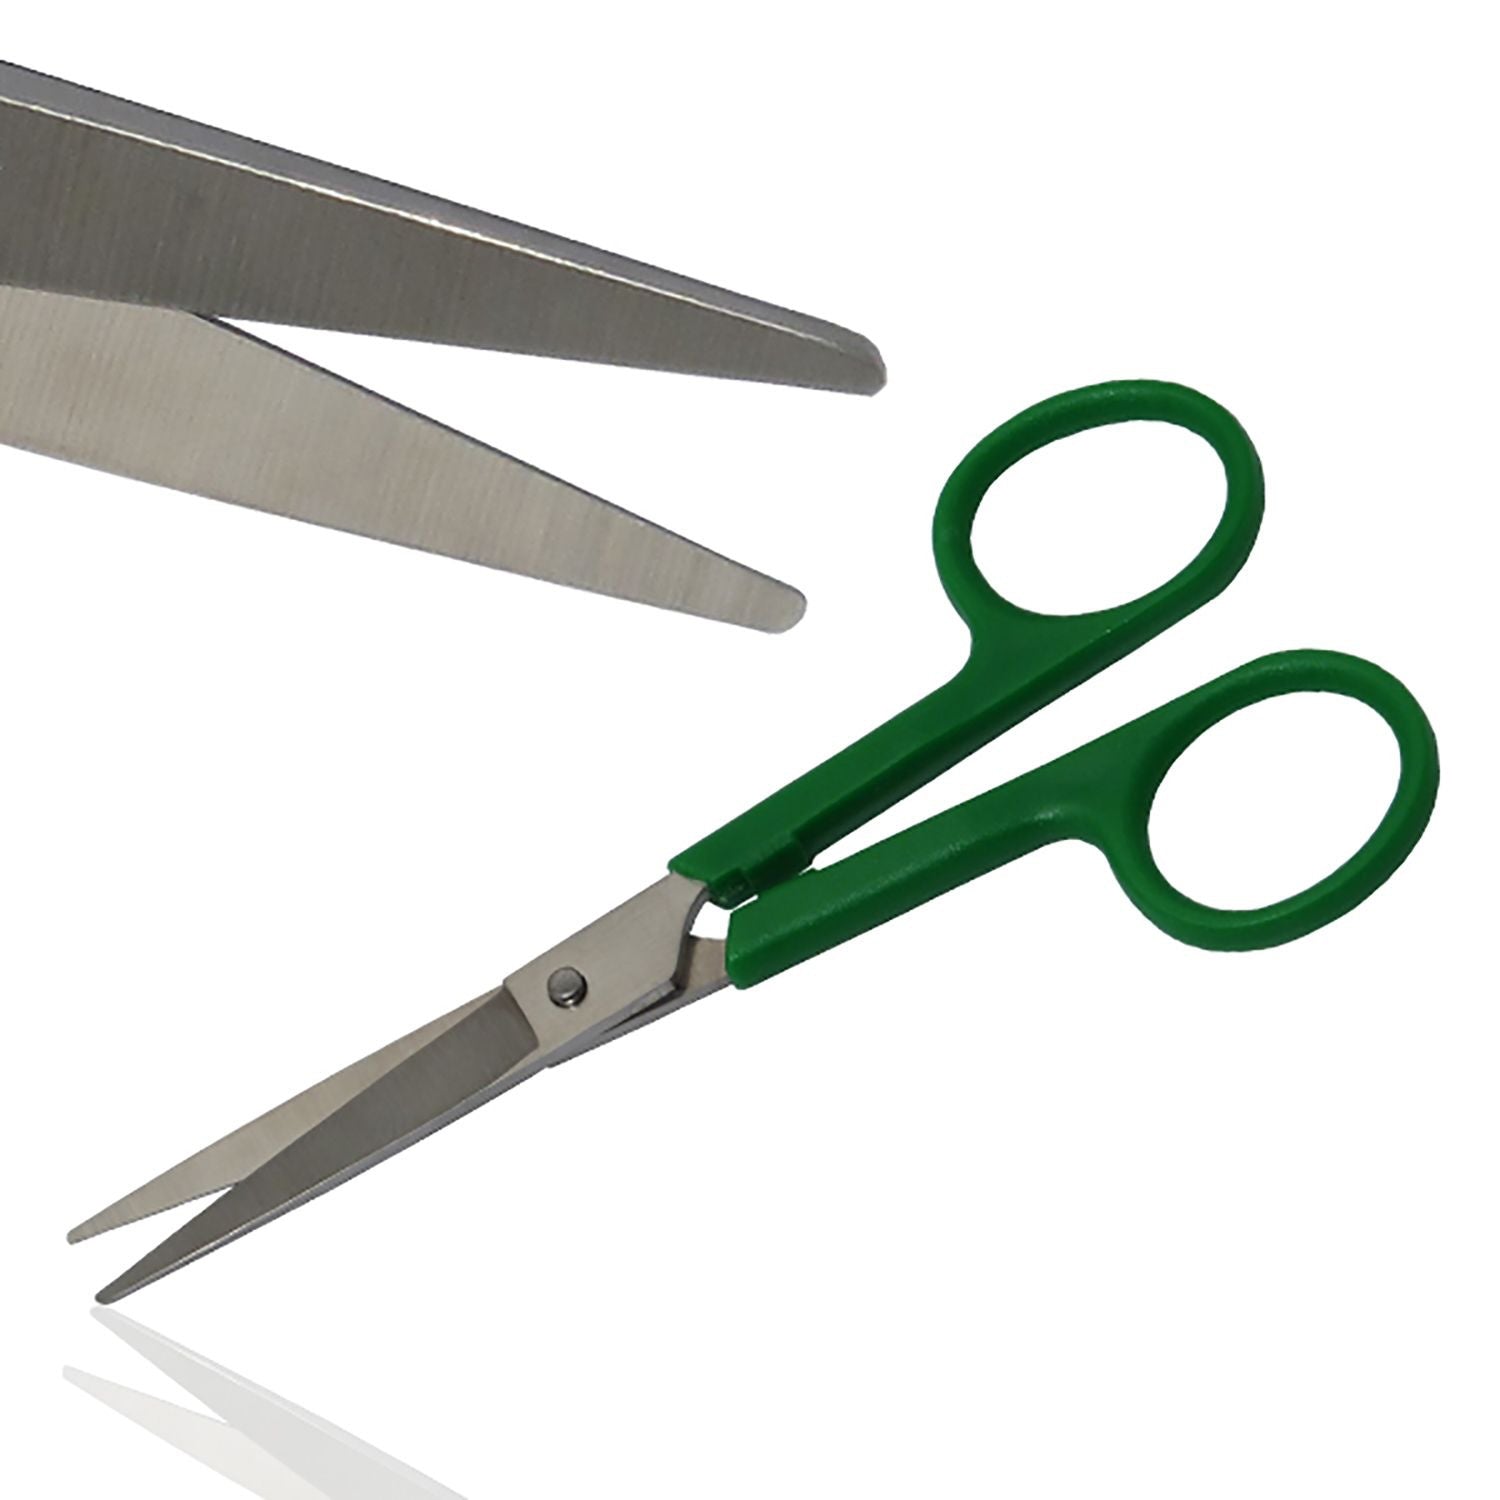 Instramed Dressing Scissors | Sharp/Sharp | 13cm | Plastic Handle | Single